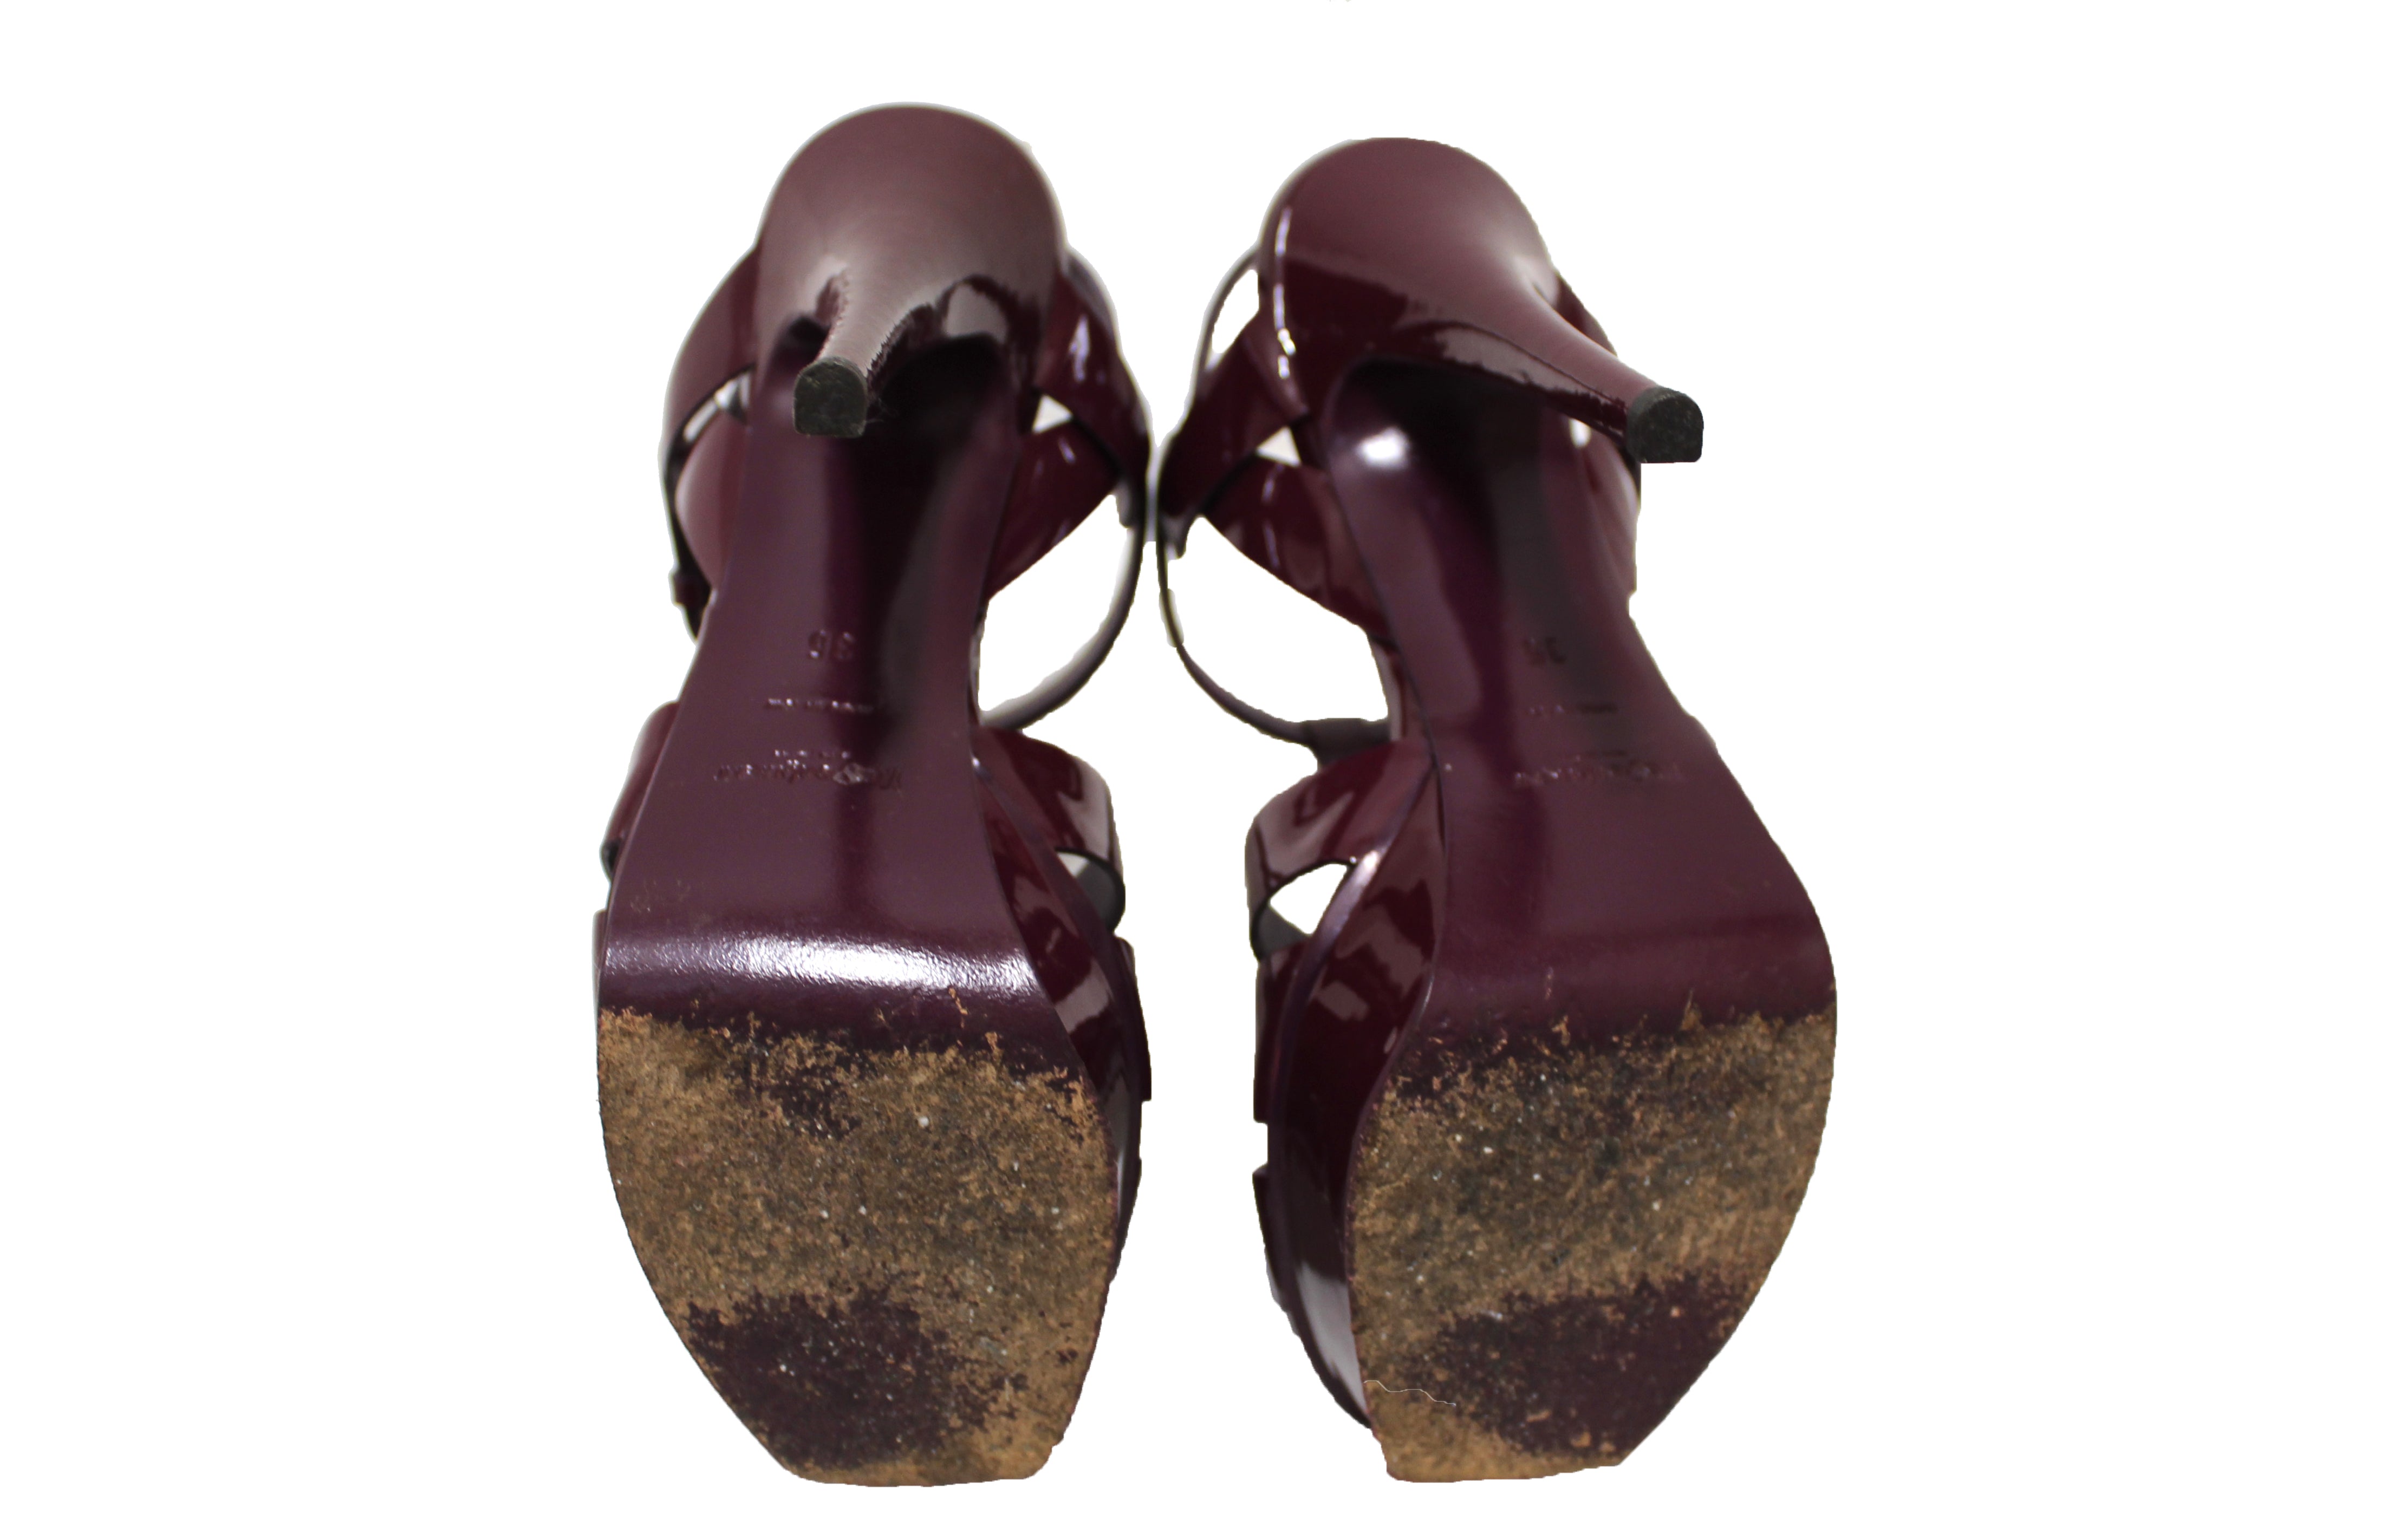 Authentic YSL Saint Laurent Burgundy Patent Leather Tribute Platform Sandal Shoes Size 35